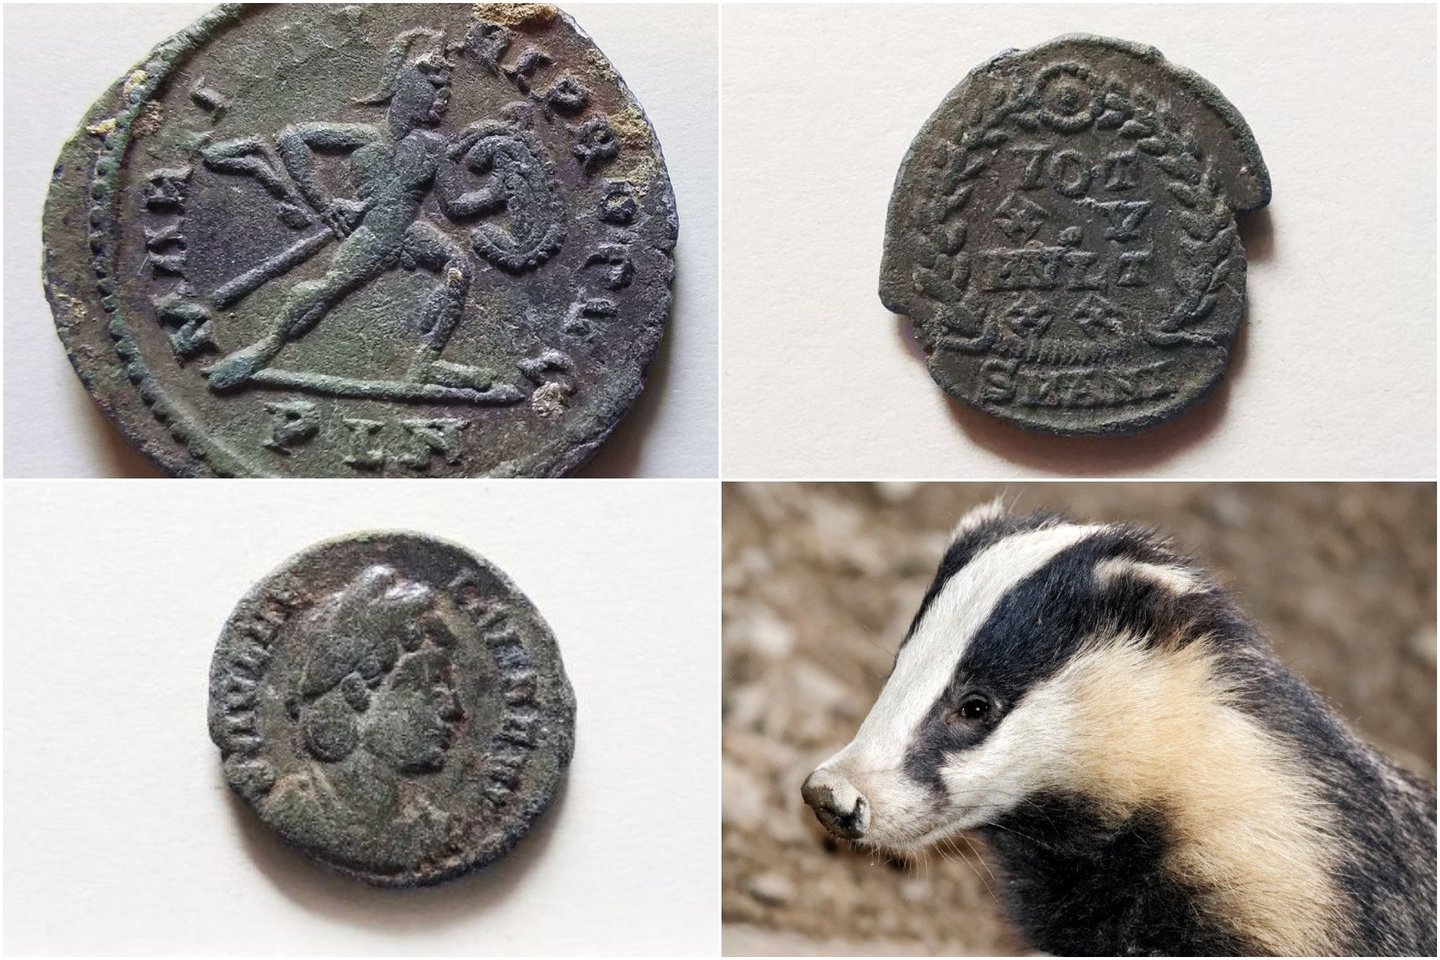  Archeologai teigia, kad šiaurės vakarų Ispanijoje buvo aptiktas maždaug 200 romėnų laikų monetų lobis - kurį, matyt, aptiko maisto ieškantis alkanas barsukas.<br> Madrido Autonominio universiteto, 123rf nuotr. / lrytas.lt mont.